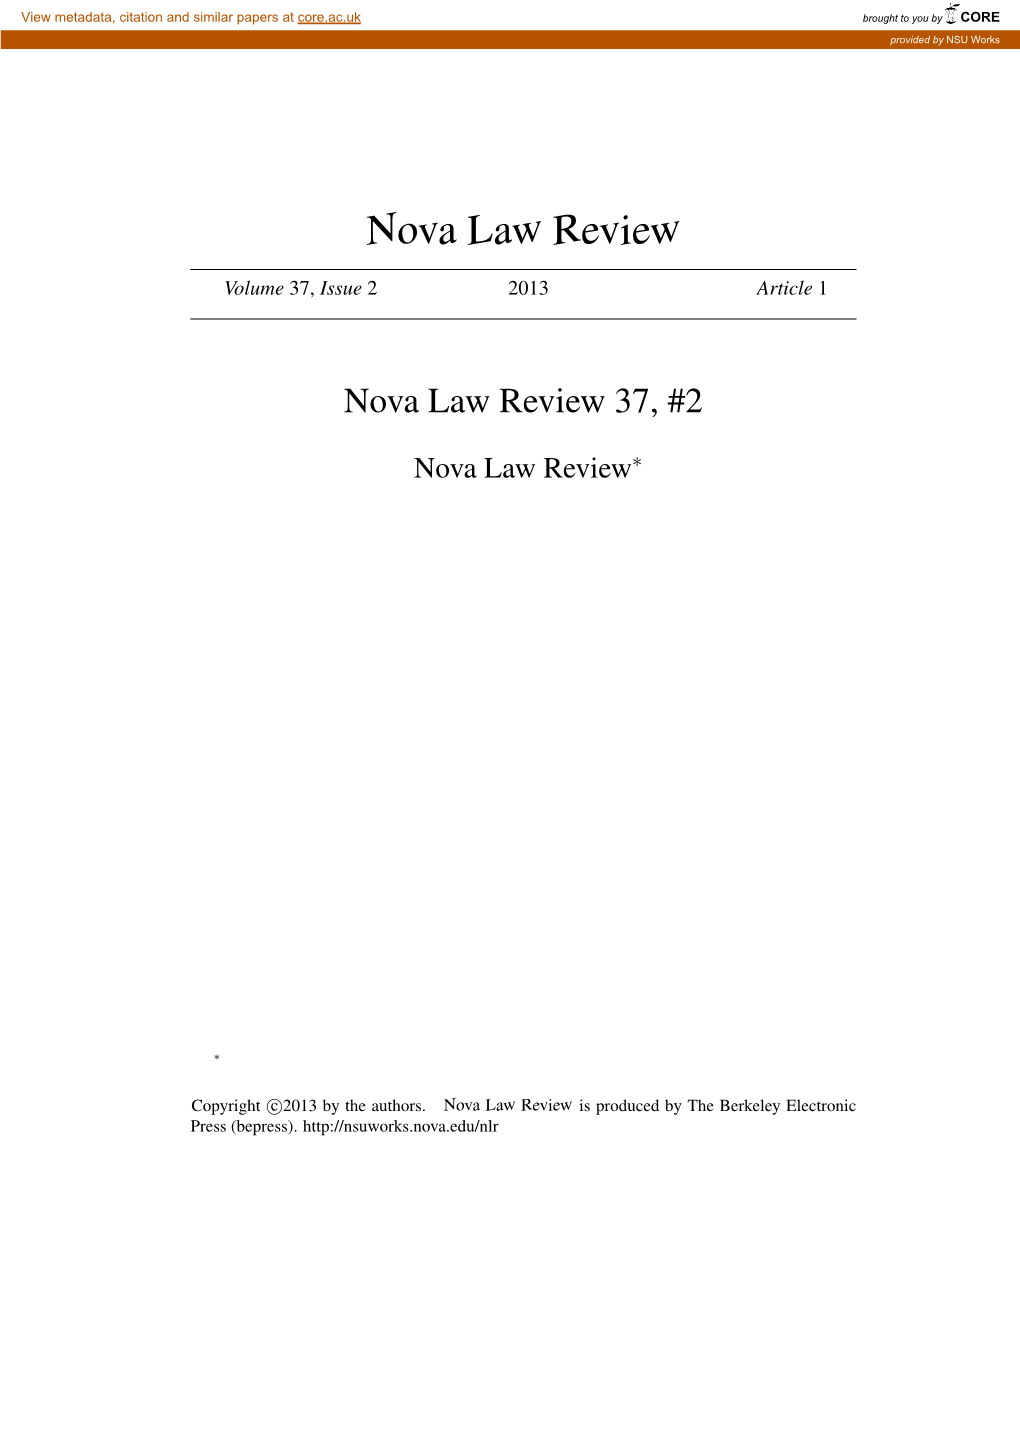 Nova Law Review 37, #2